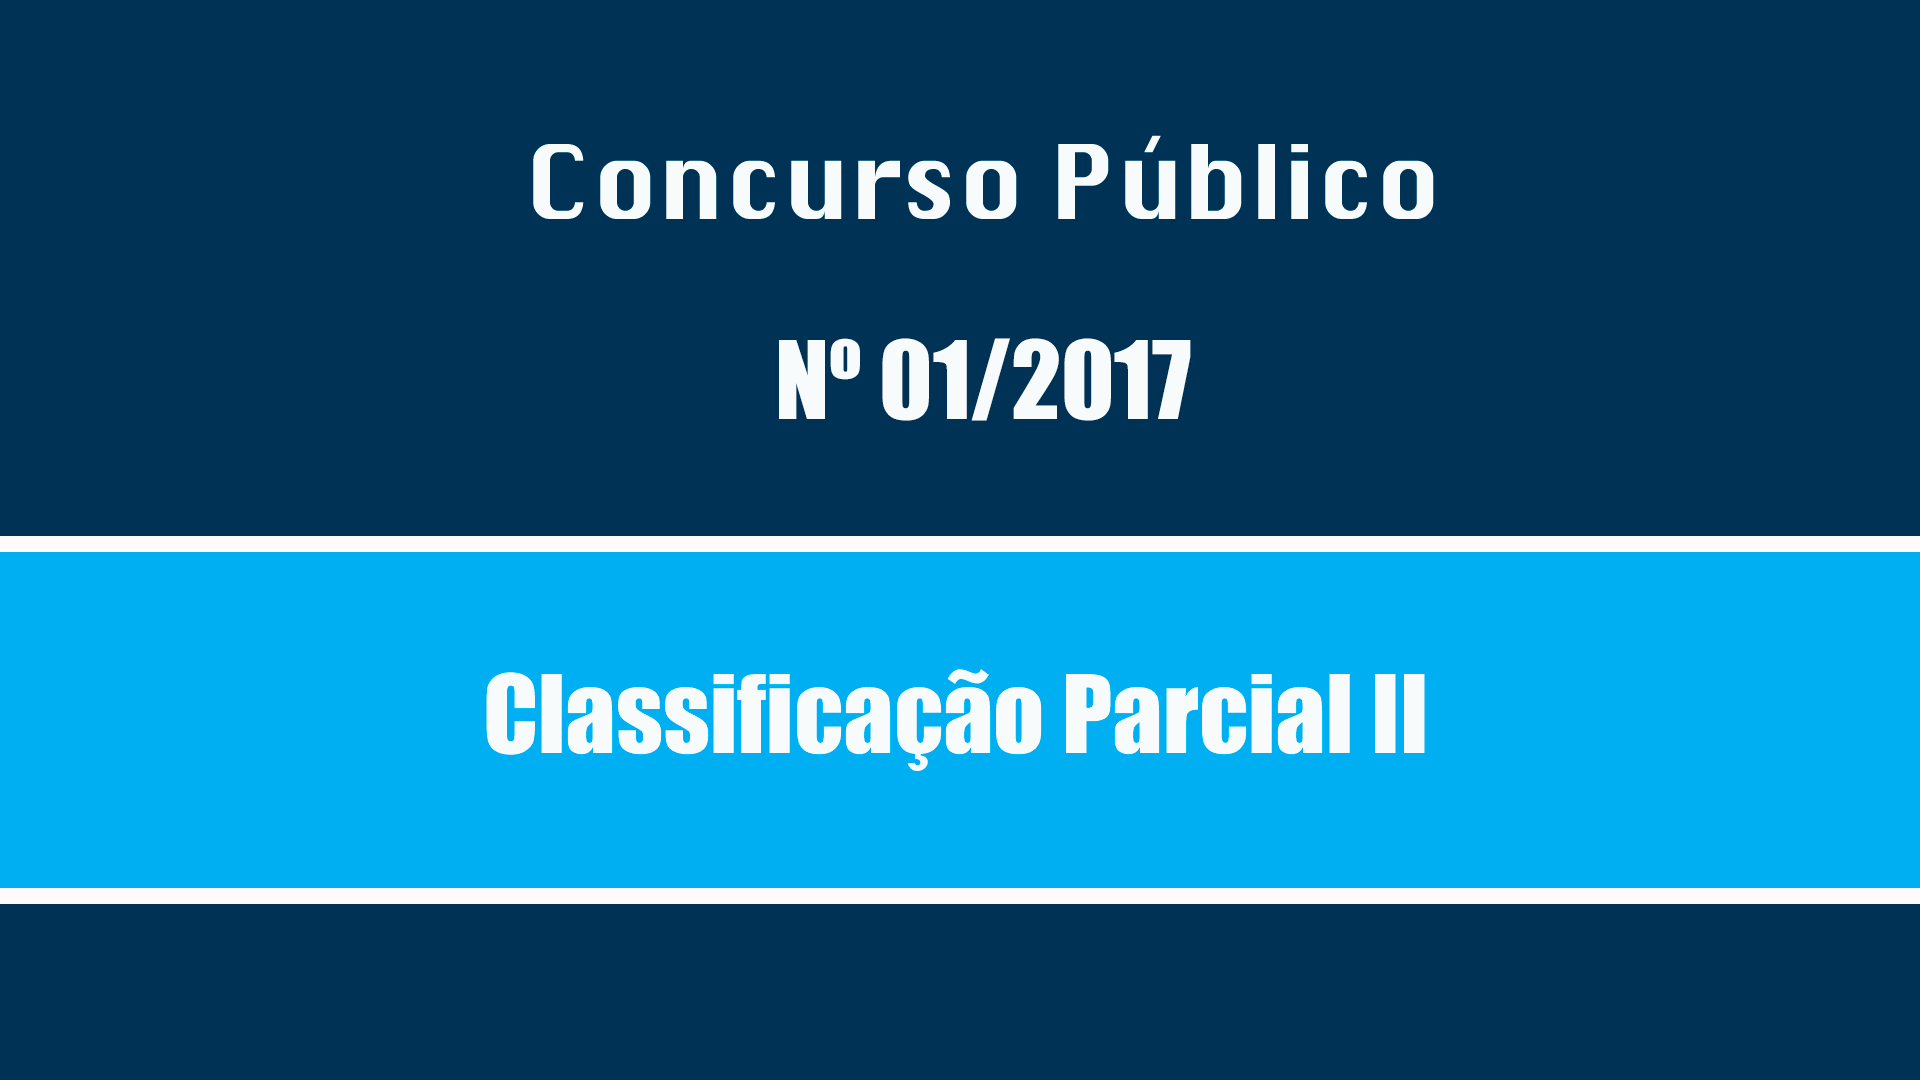 CONCURSO PUBLICO Nº 01/2017 - CLASSIFICAÇÃO PARCIAL II